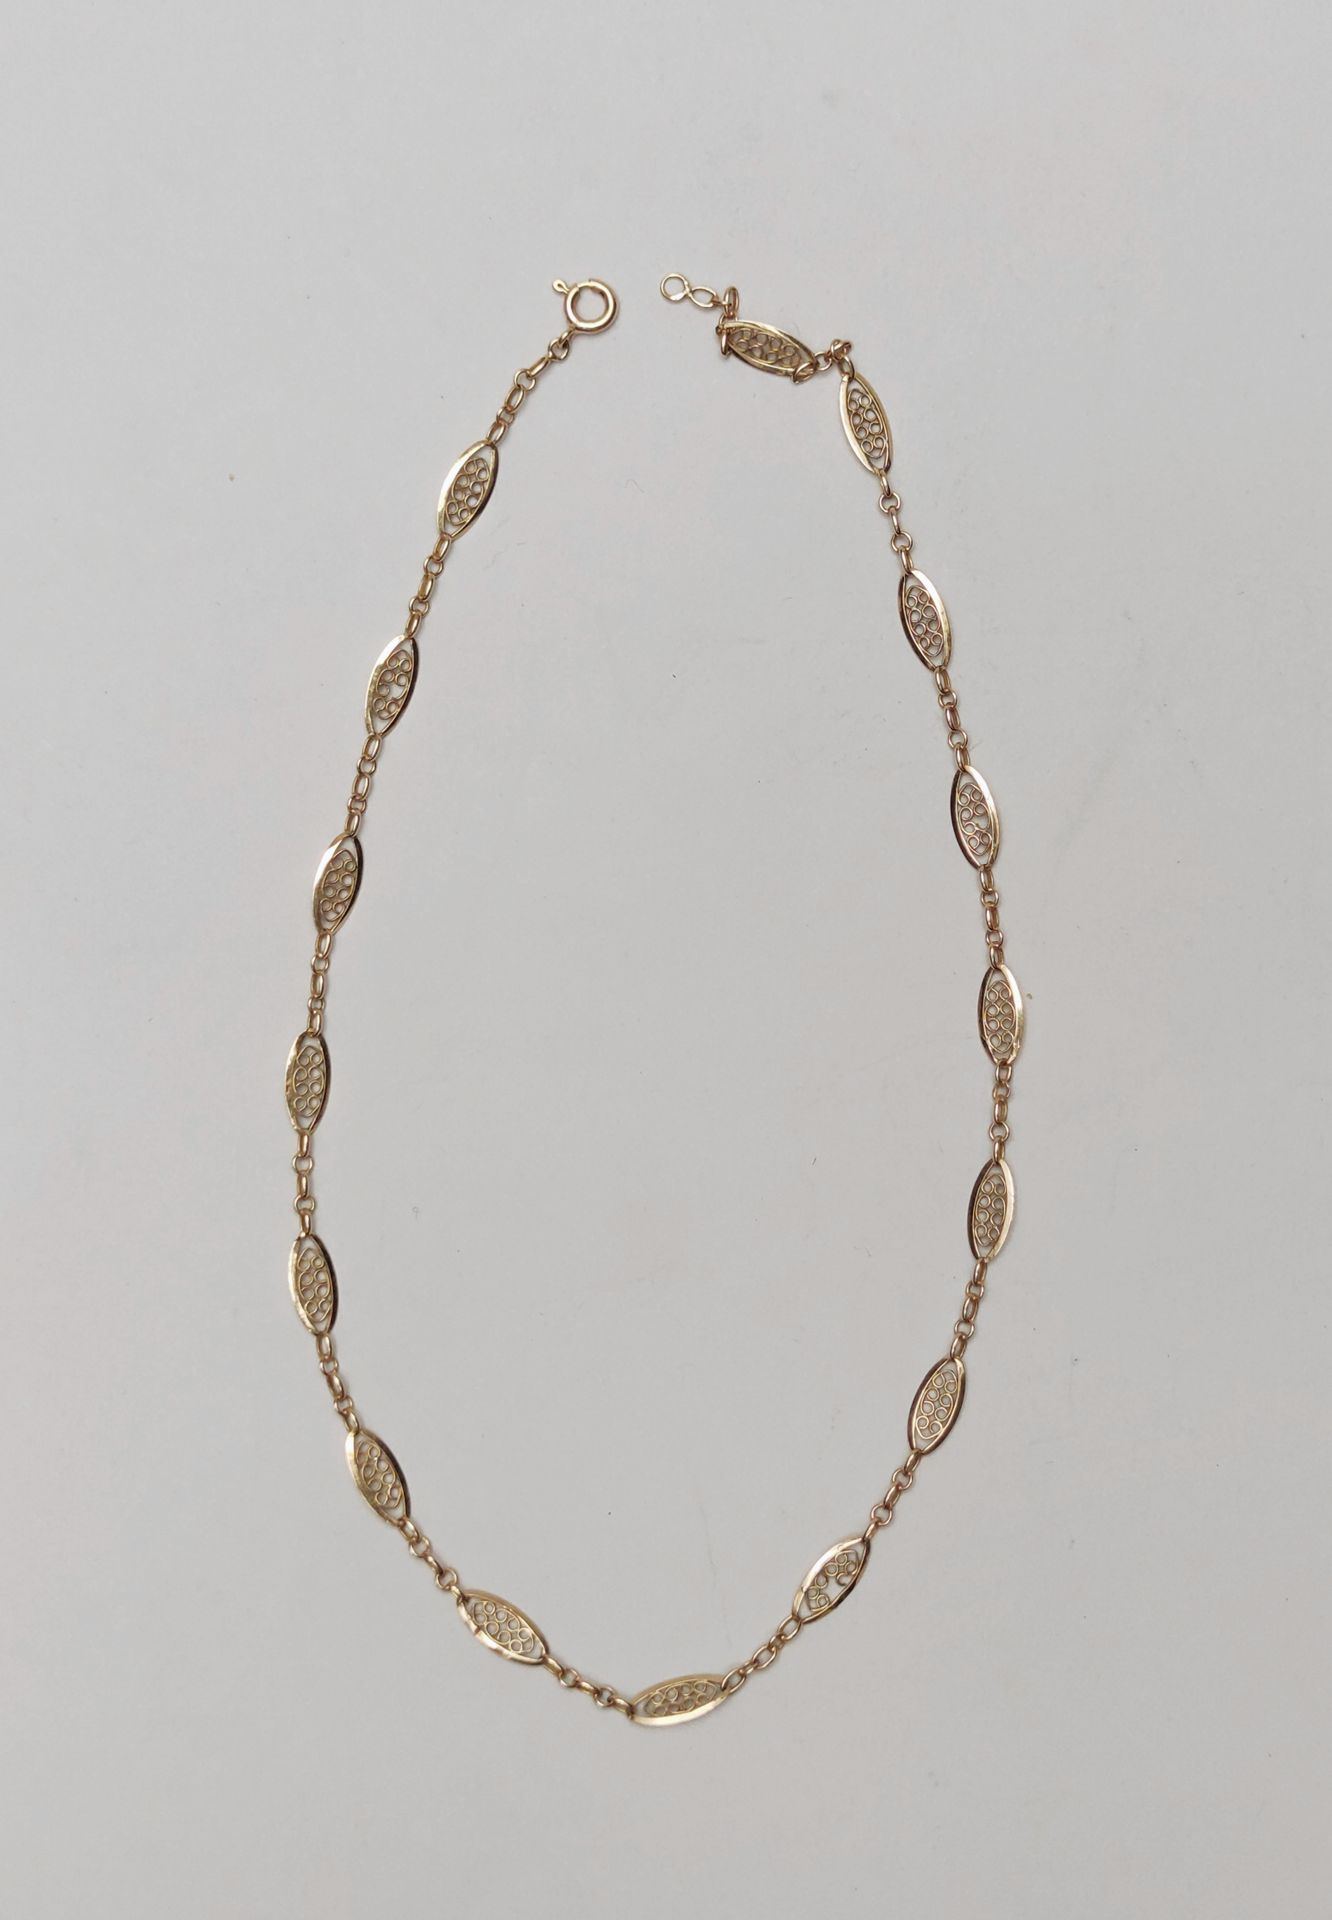 Null Halskette aus Gelbgold 750°/00 mit 16 ovalen Gliedern 

Gewicht : 4.9 g